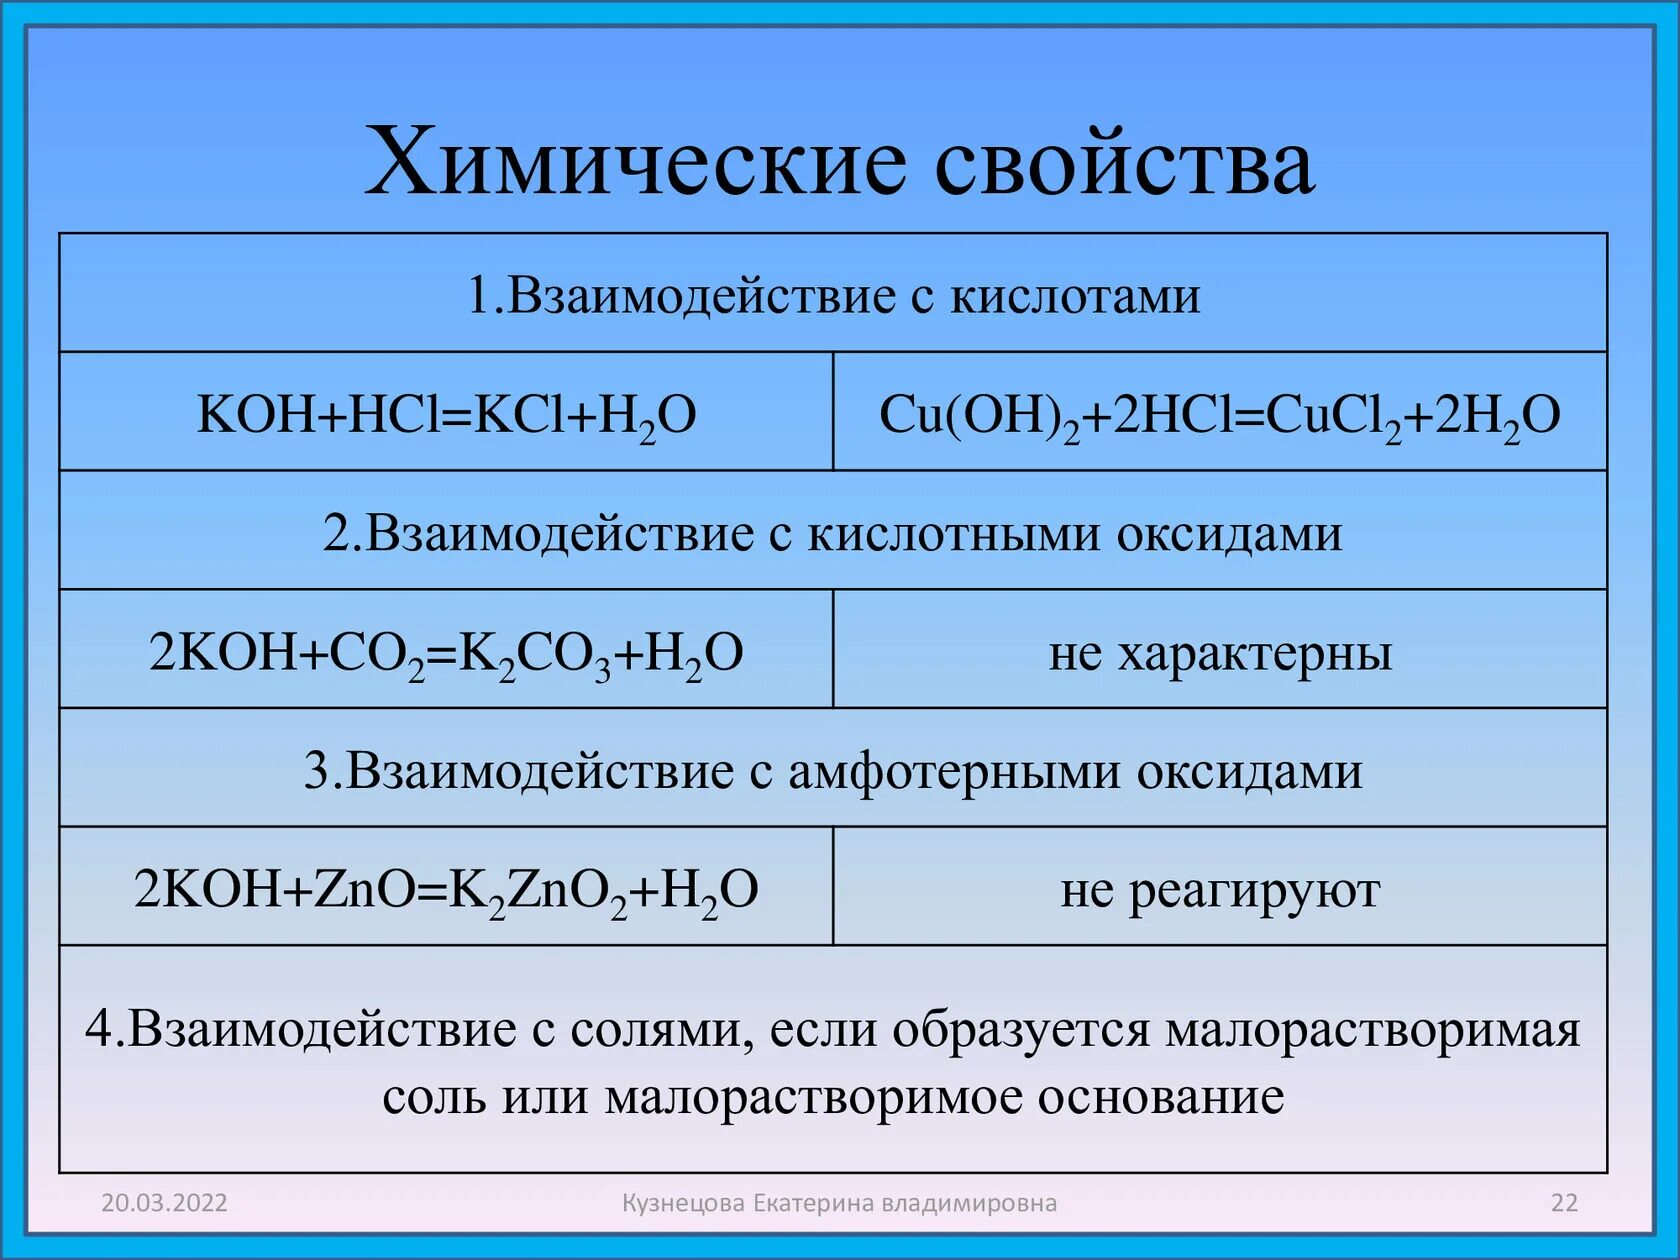 Hcl класс соединения и название. Химические свойства. Koh химические свойства. Koh взаимодействует с. Химические свойства взаимодействие с кислотами.